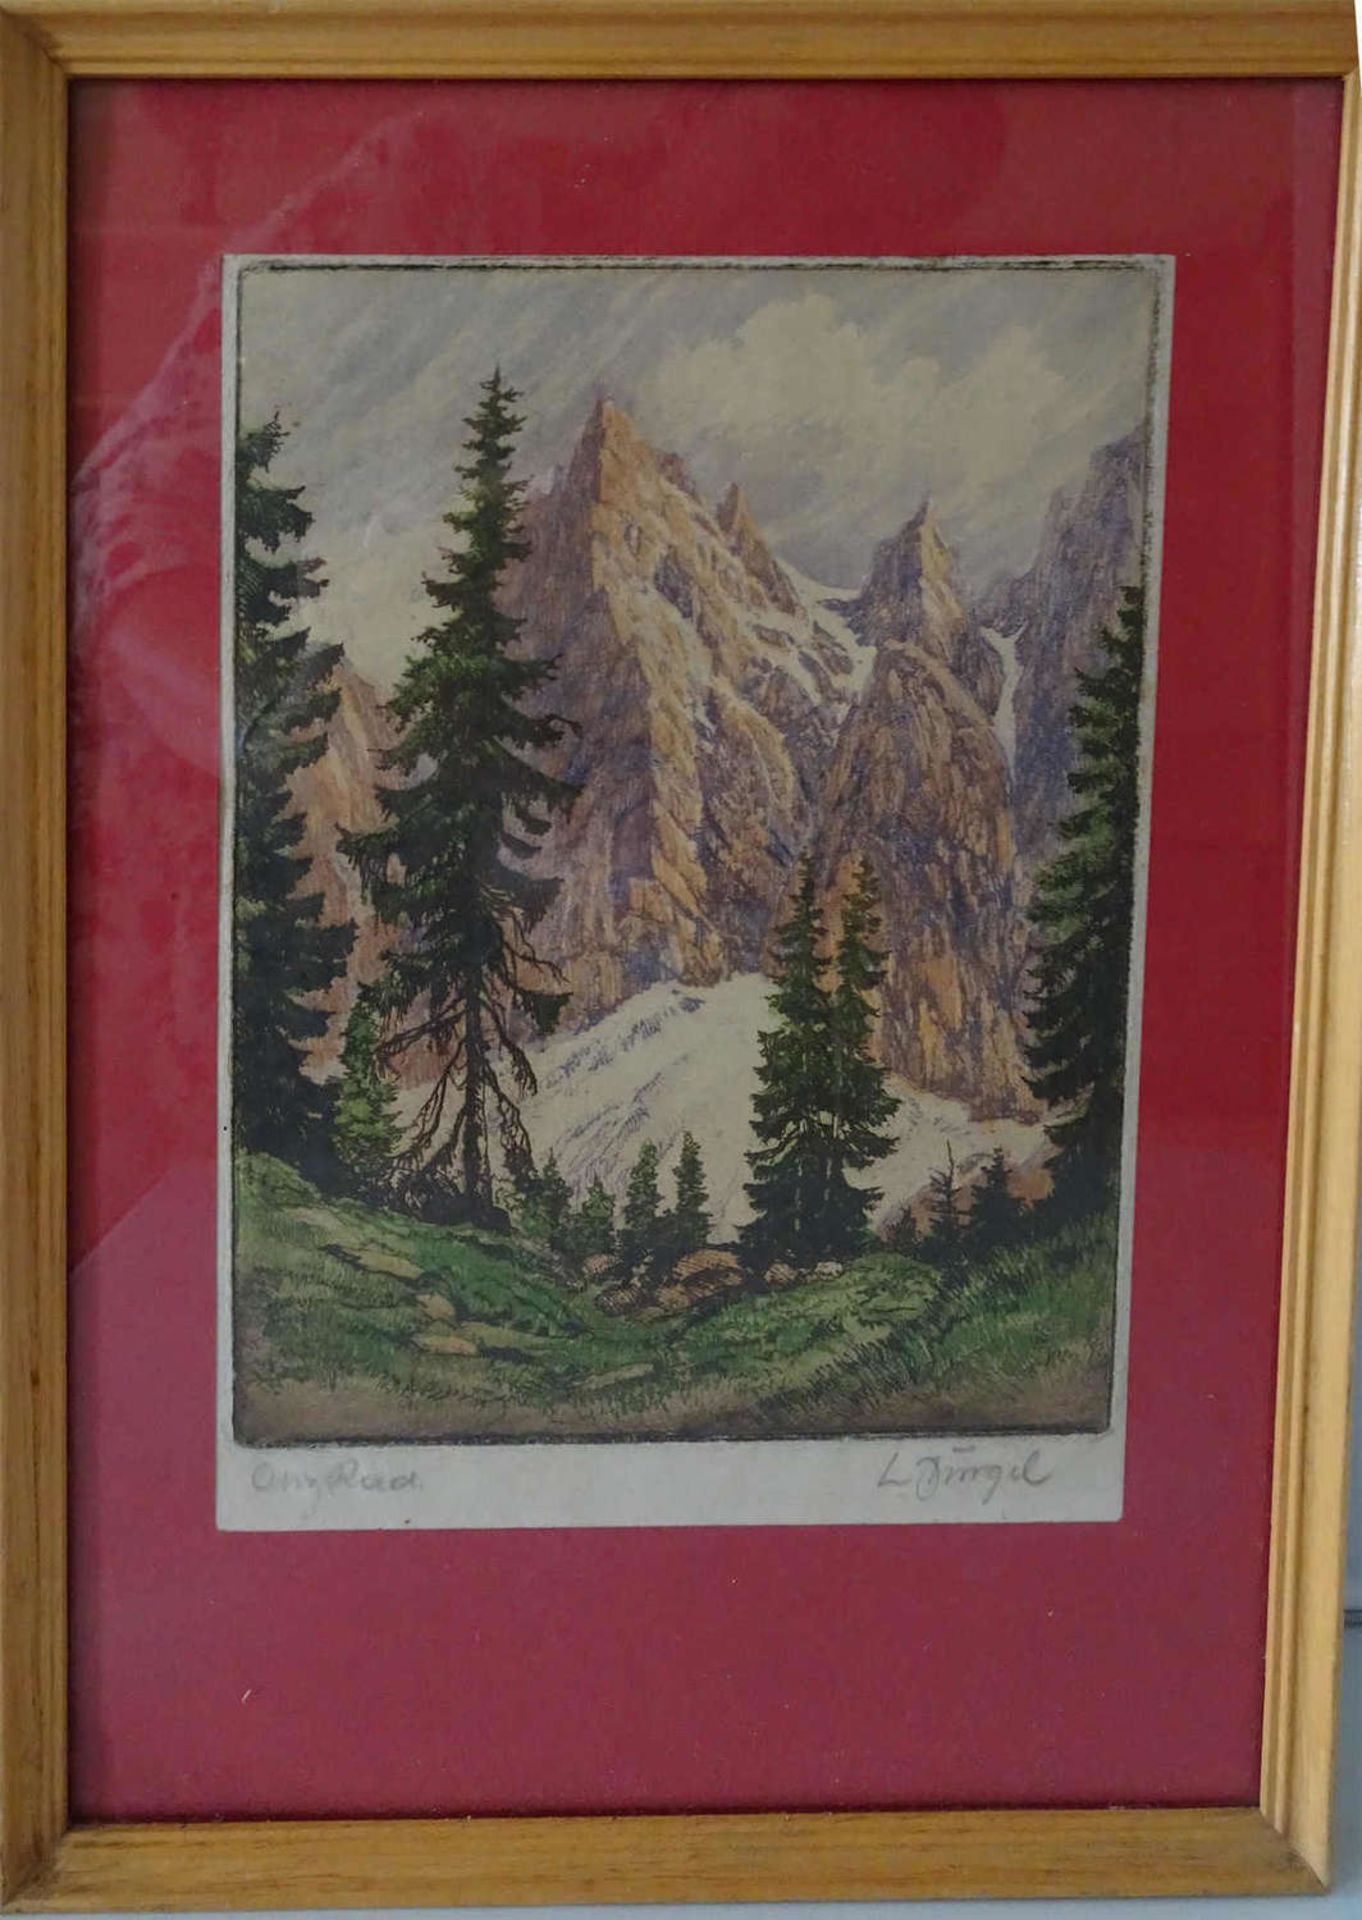 L. Dingel, Radierung "Hochgebirge mit Fichtenbestand". Blatt Höhe ca. 21cm, Breite ca. 15cm, Hinter